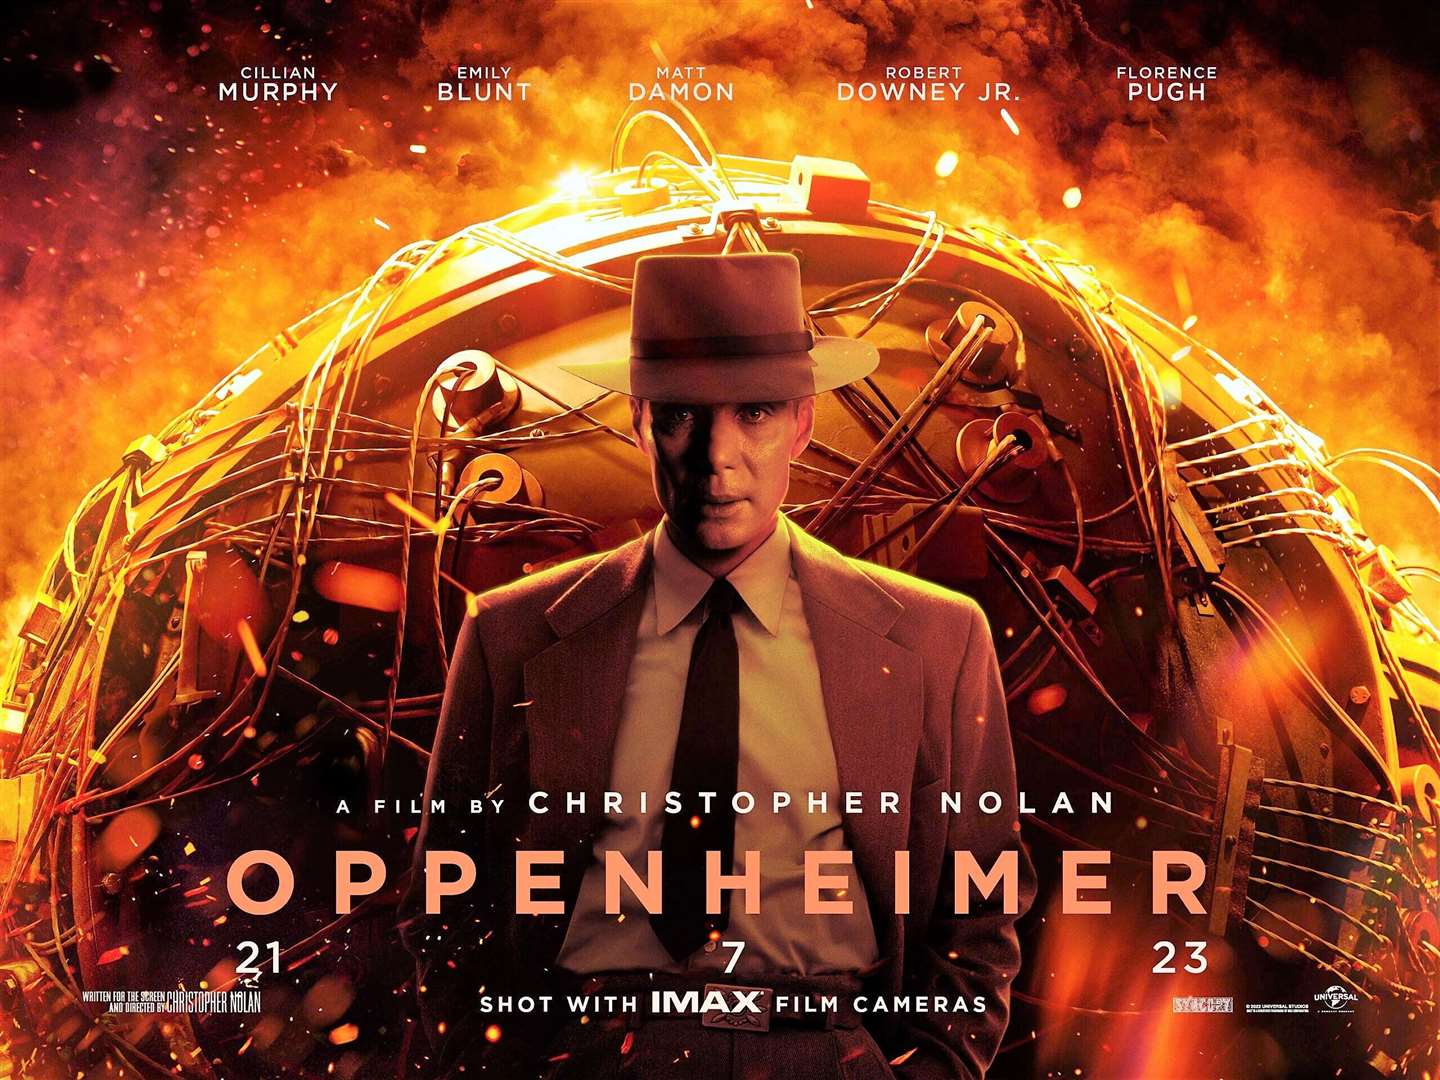 The movie poster for Oppenheimer.